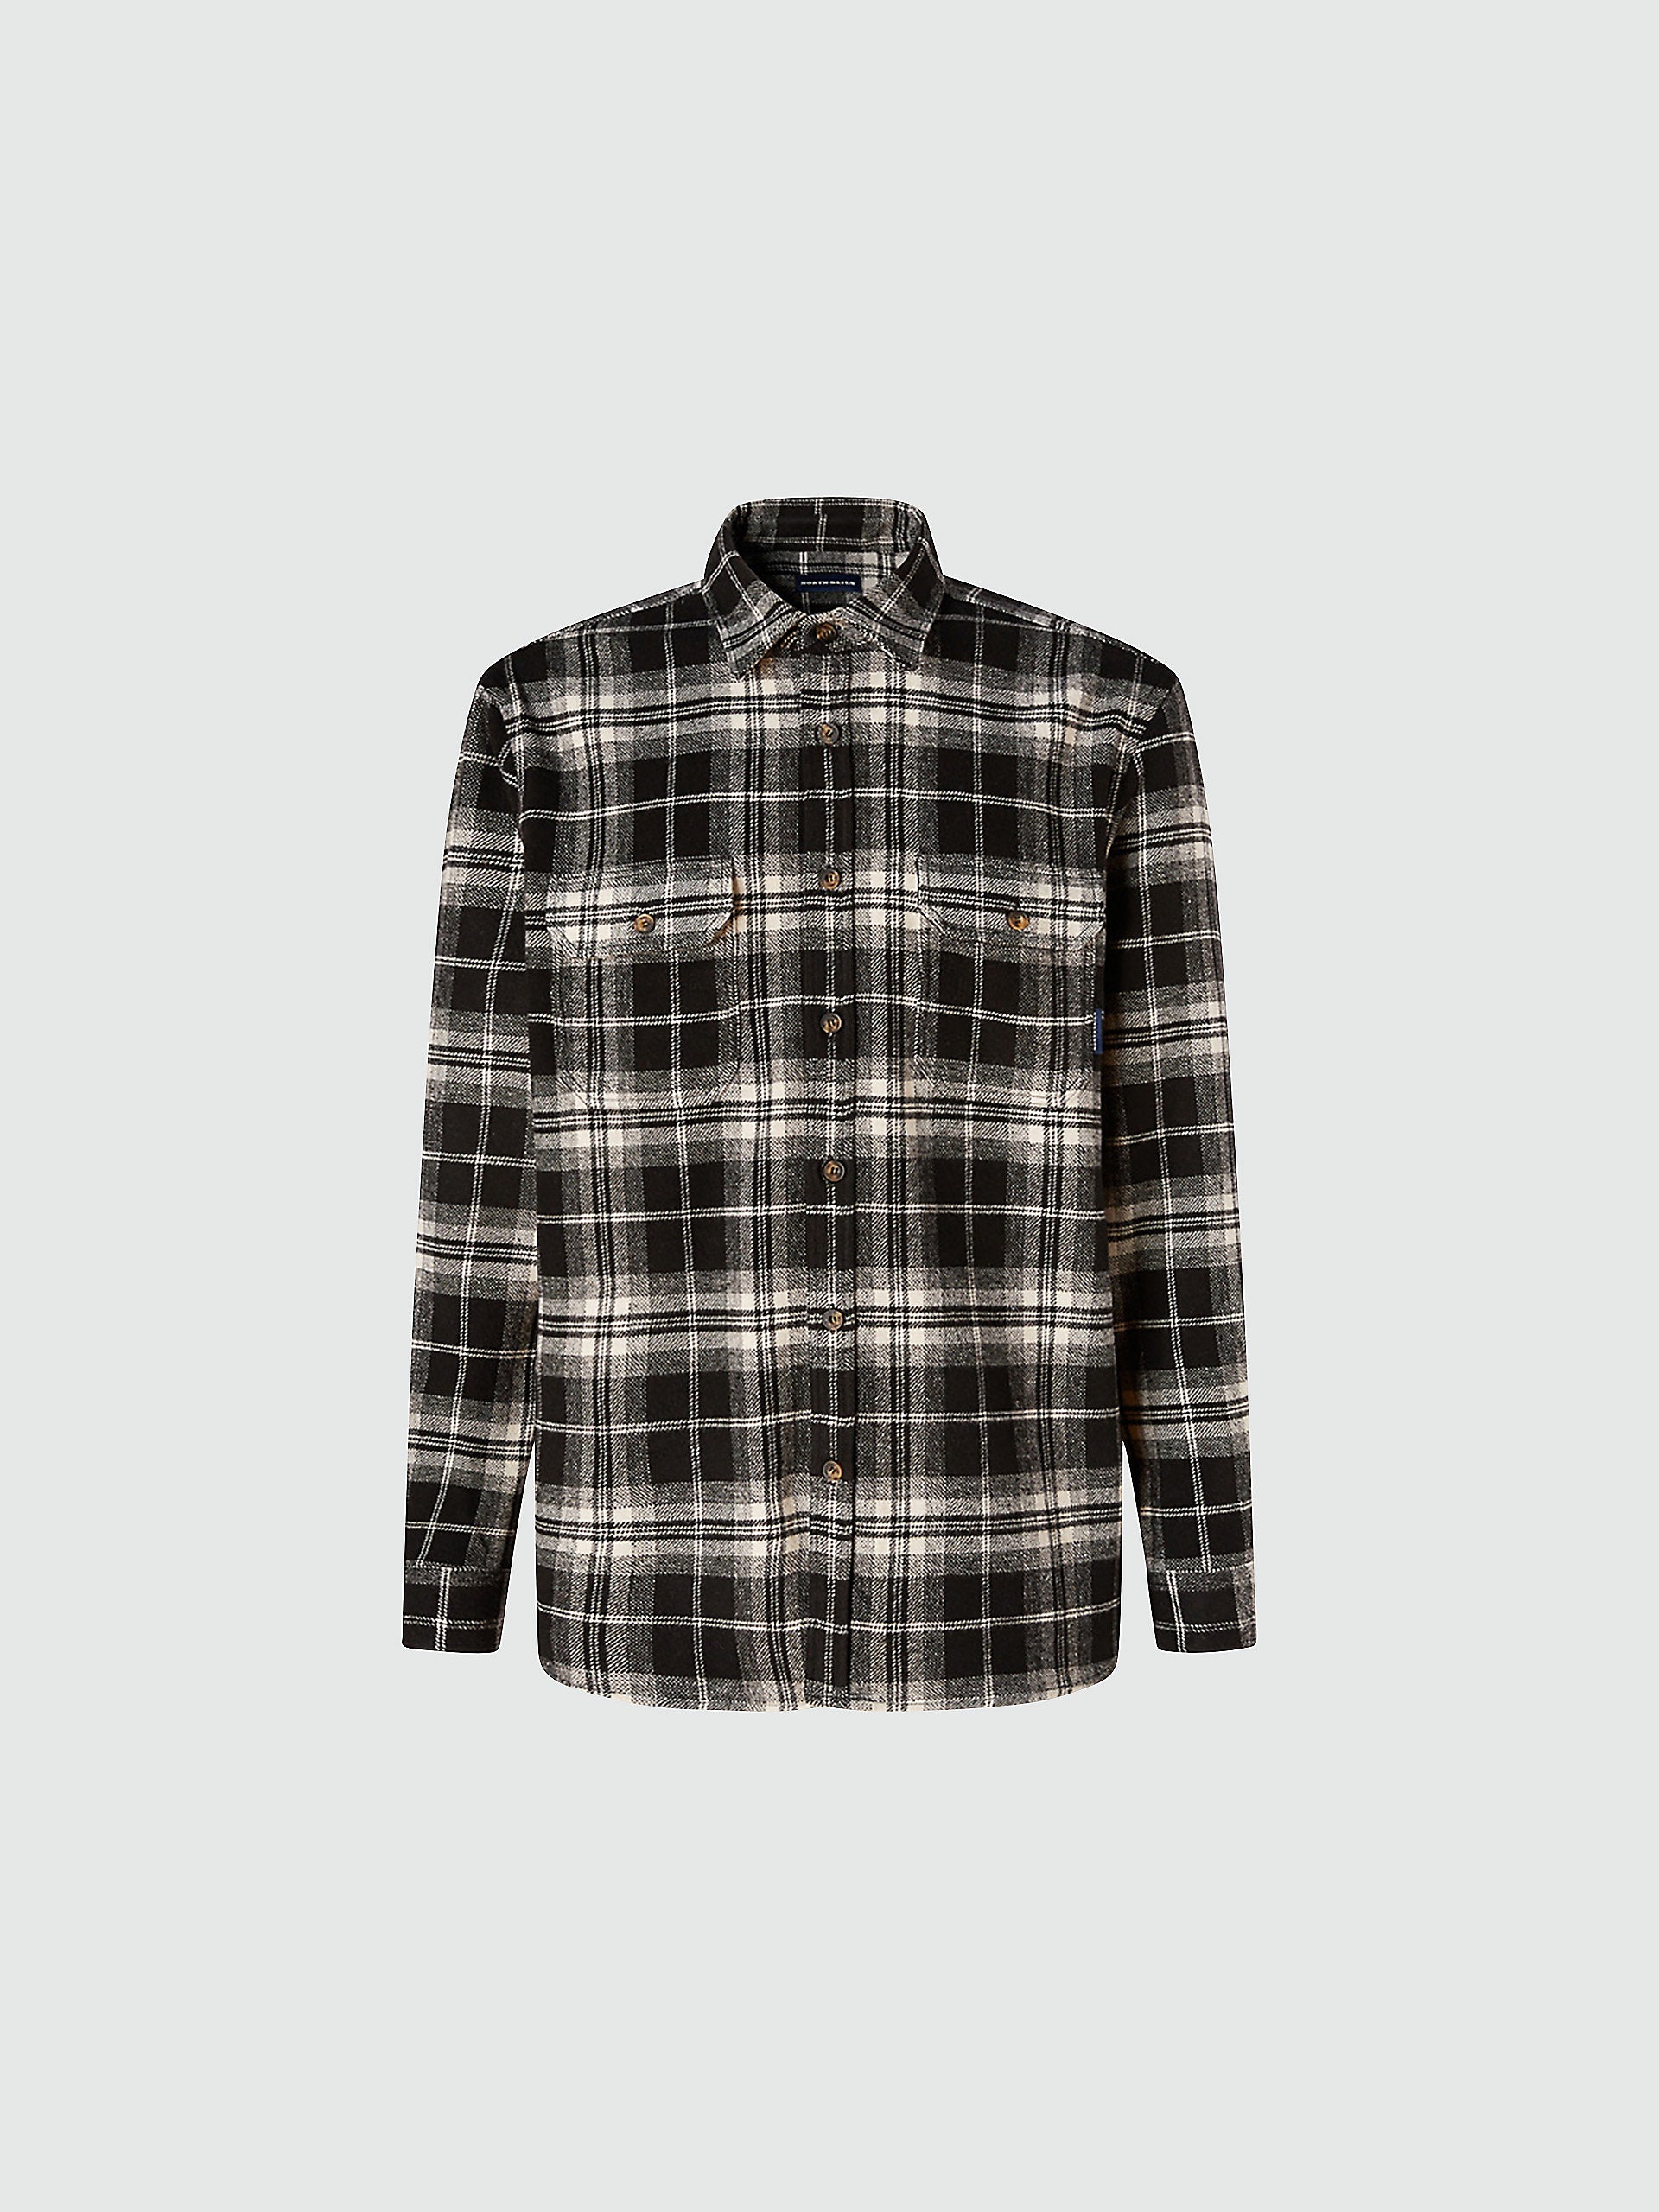 即完売品 OVY Heavy Flannel Check Shirts L - トップス